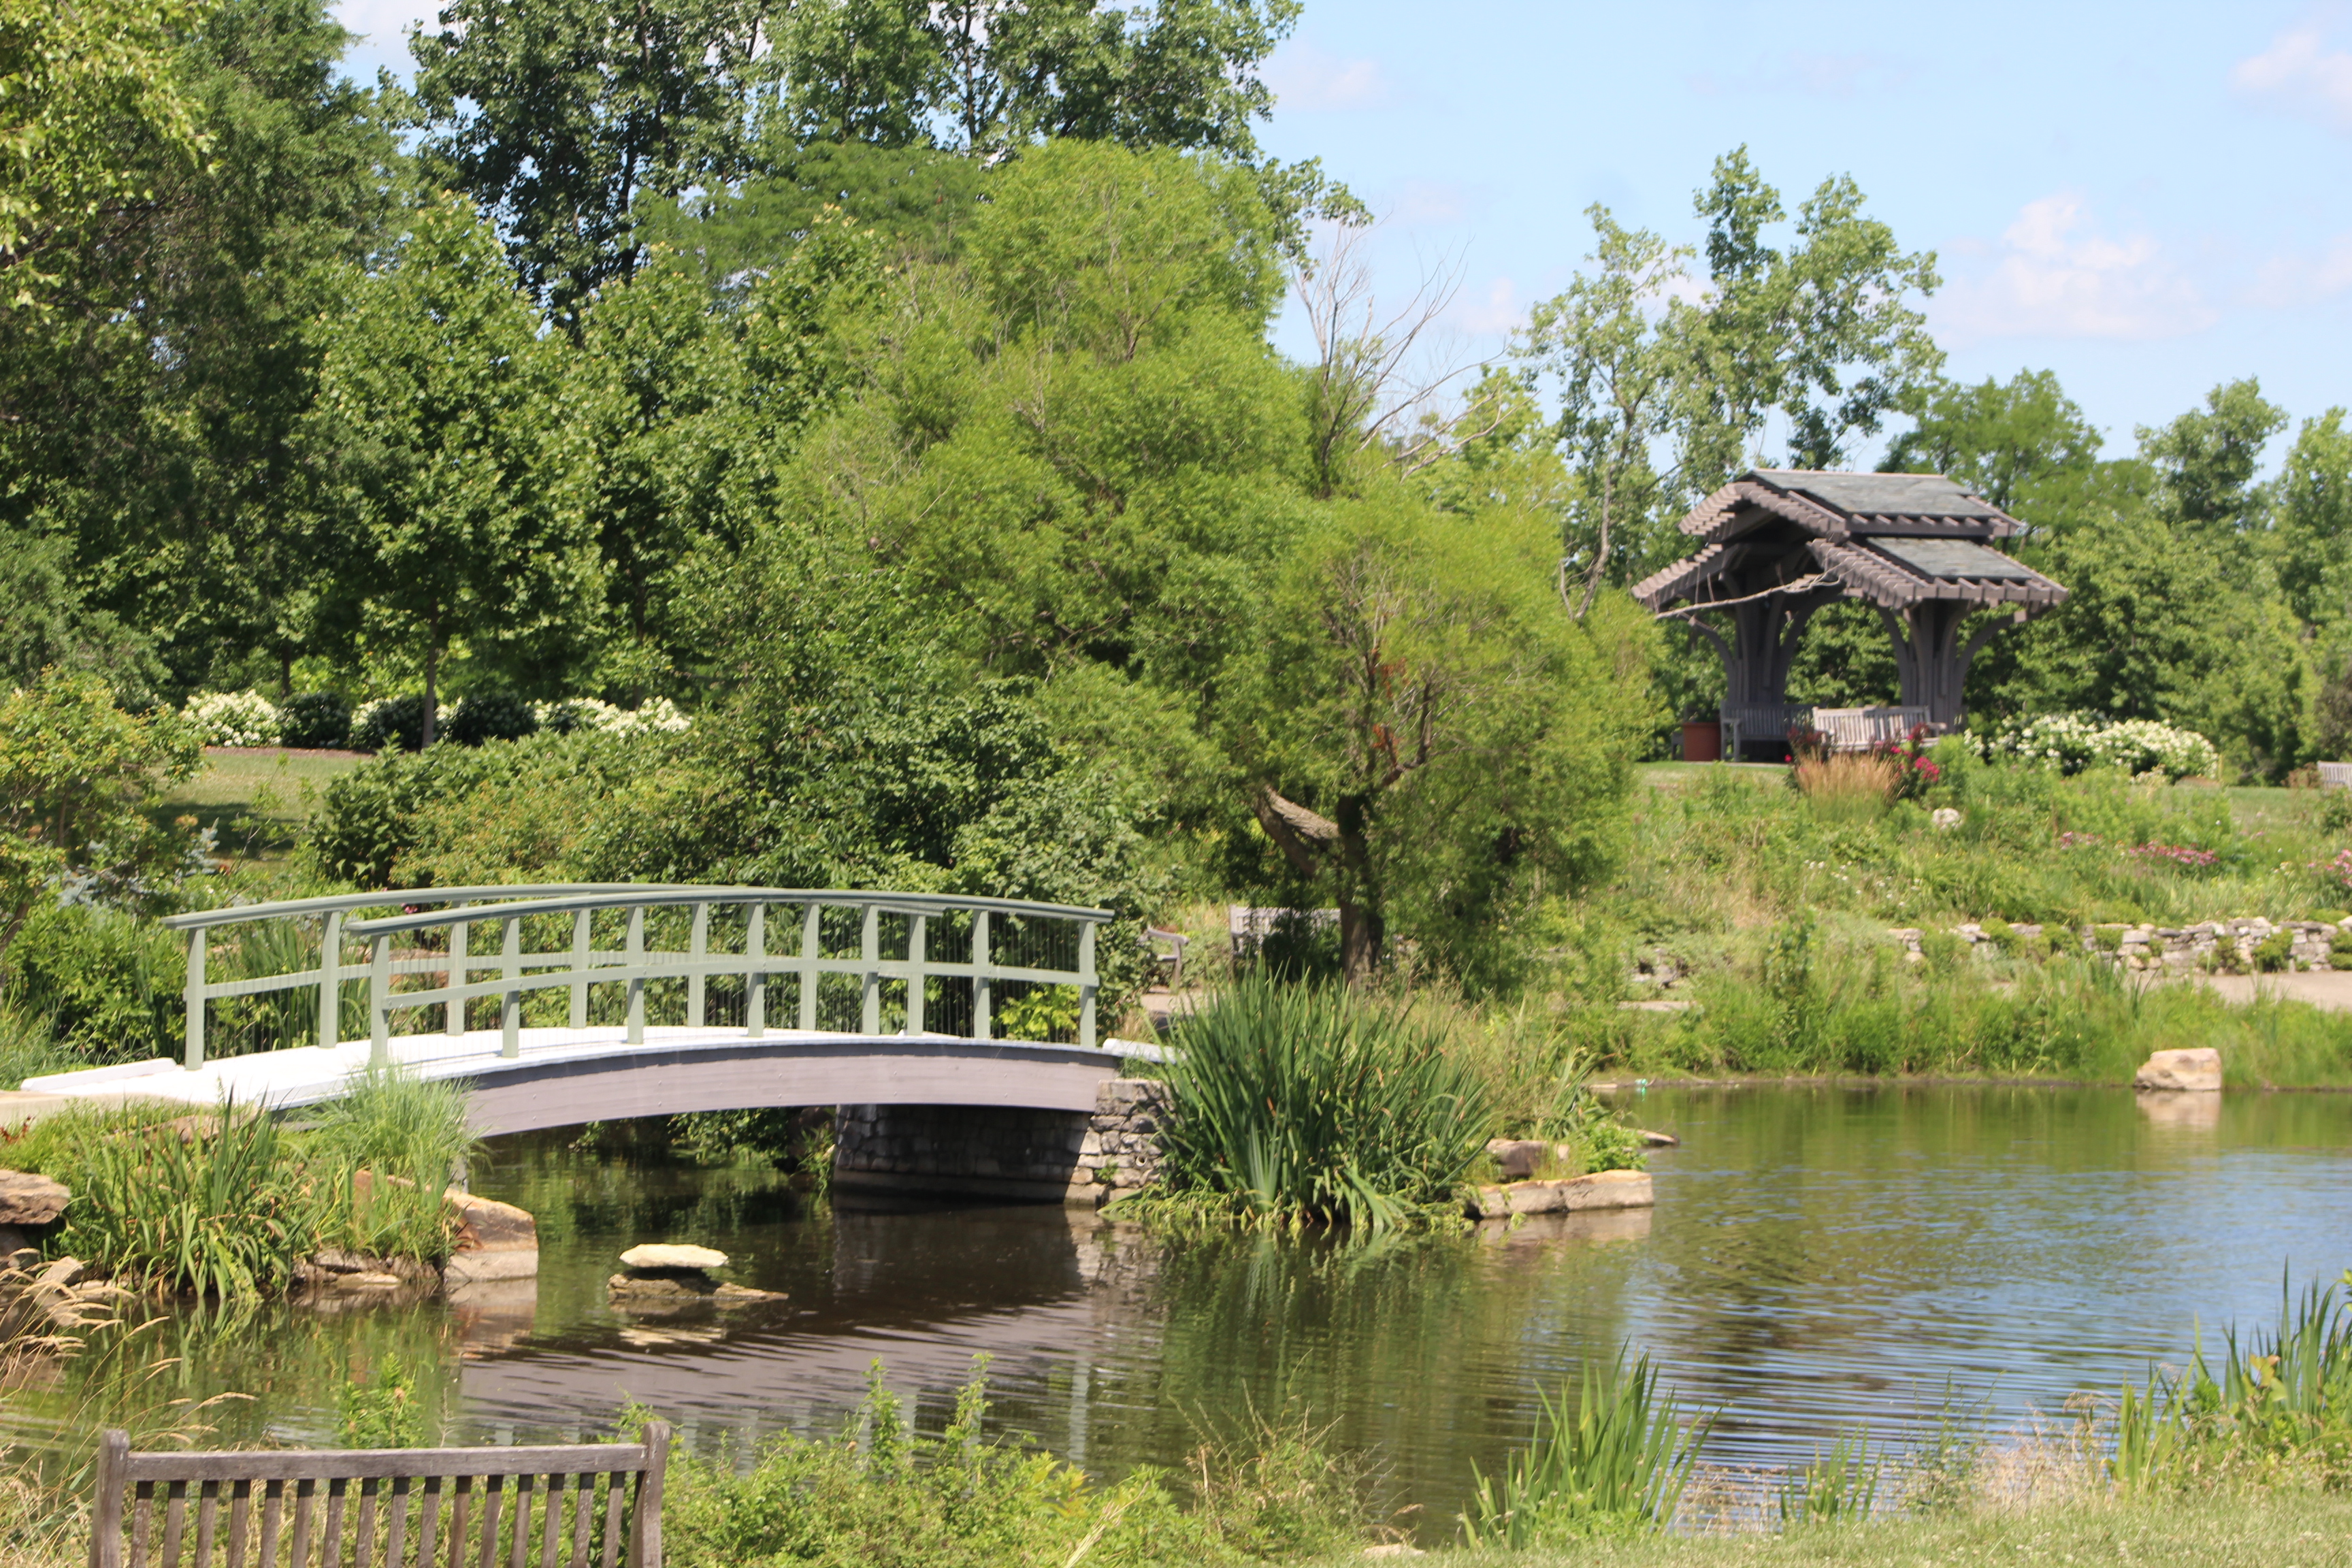 The Monet bridge at Cox Arboretum MetroPark. CORNELIUS FROLIK / STAFF